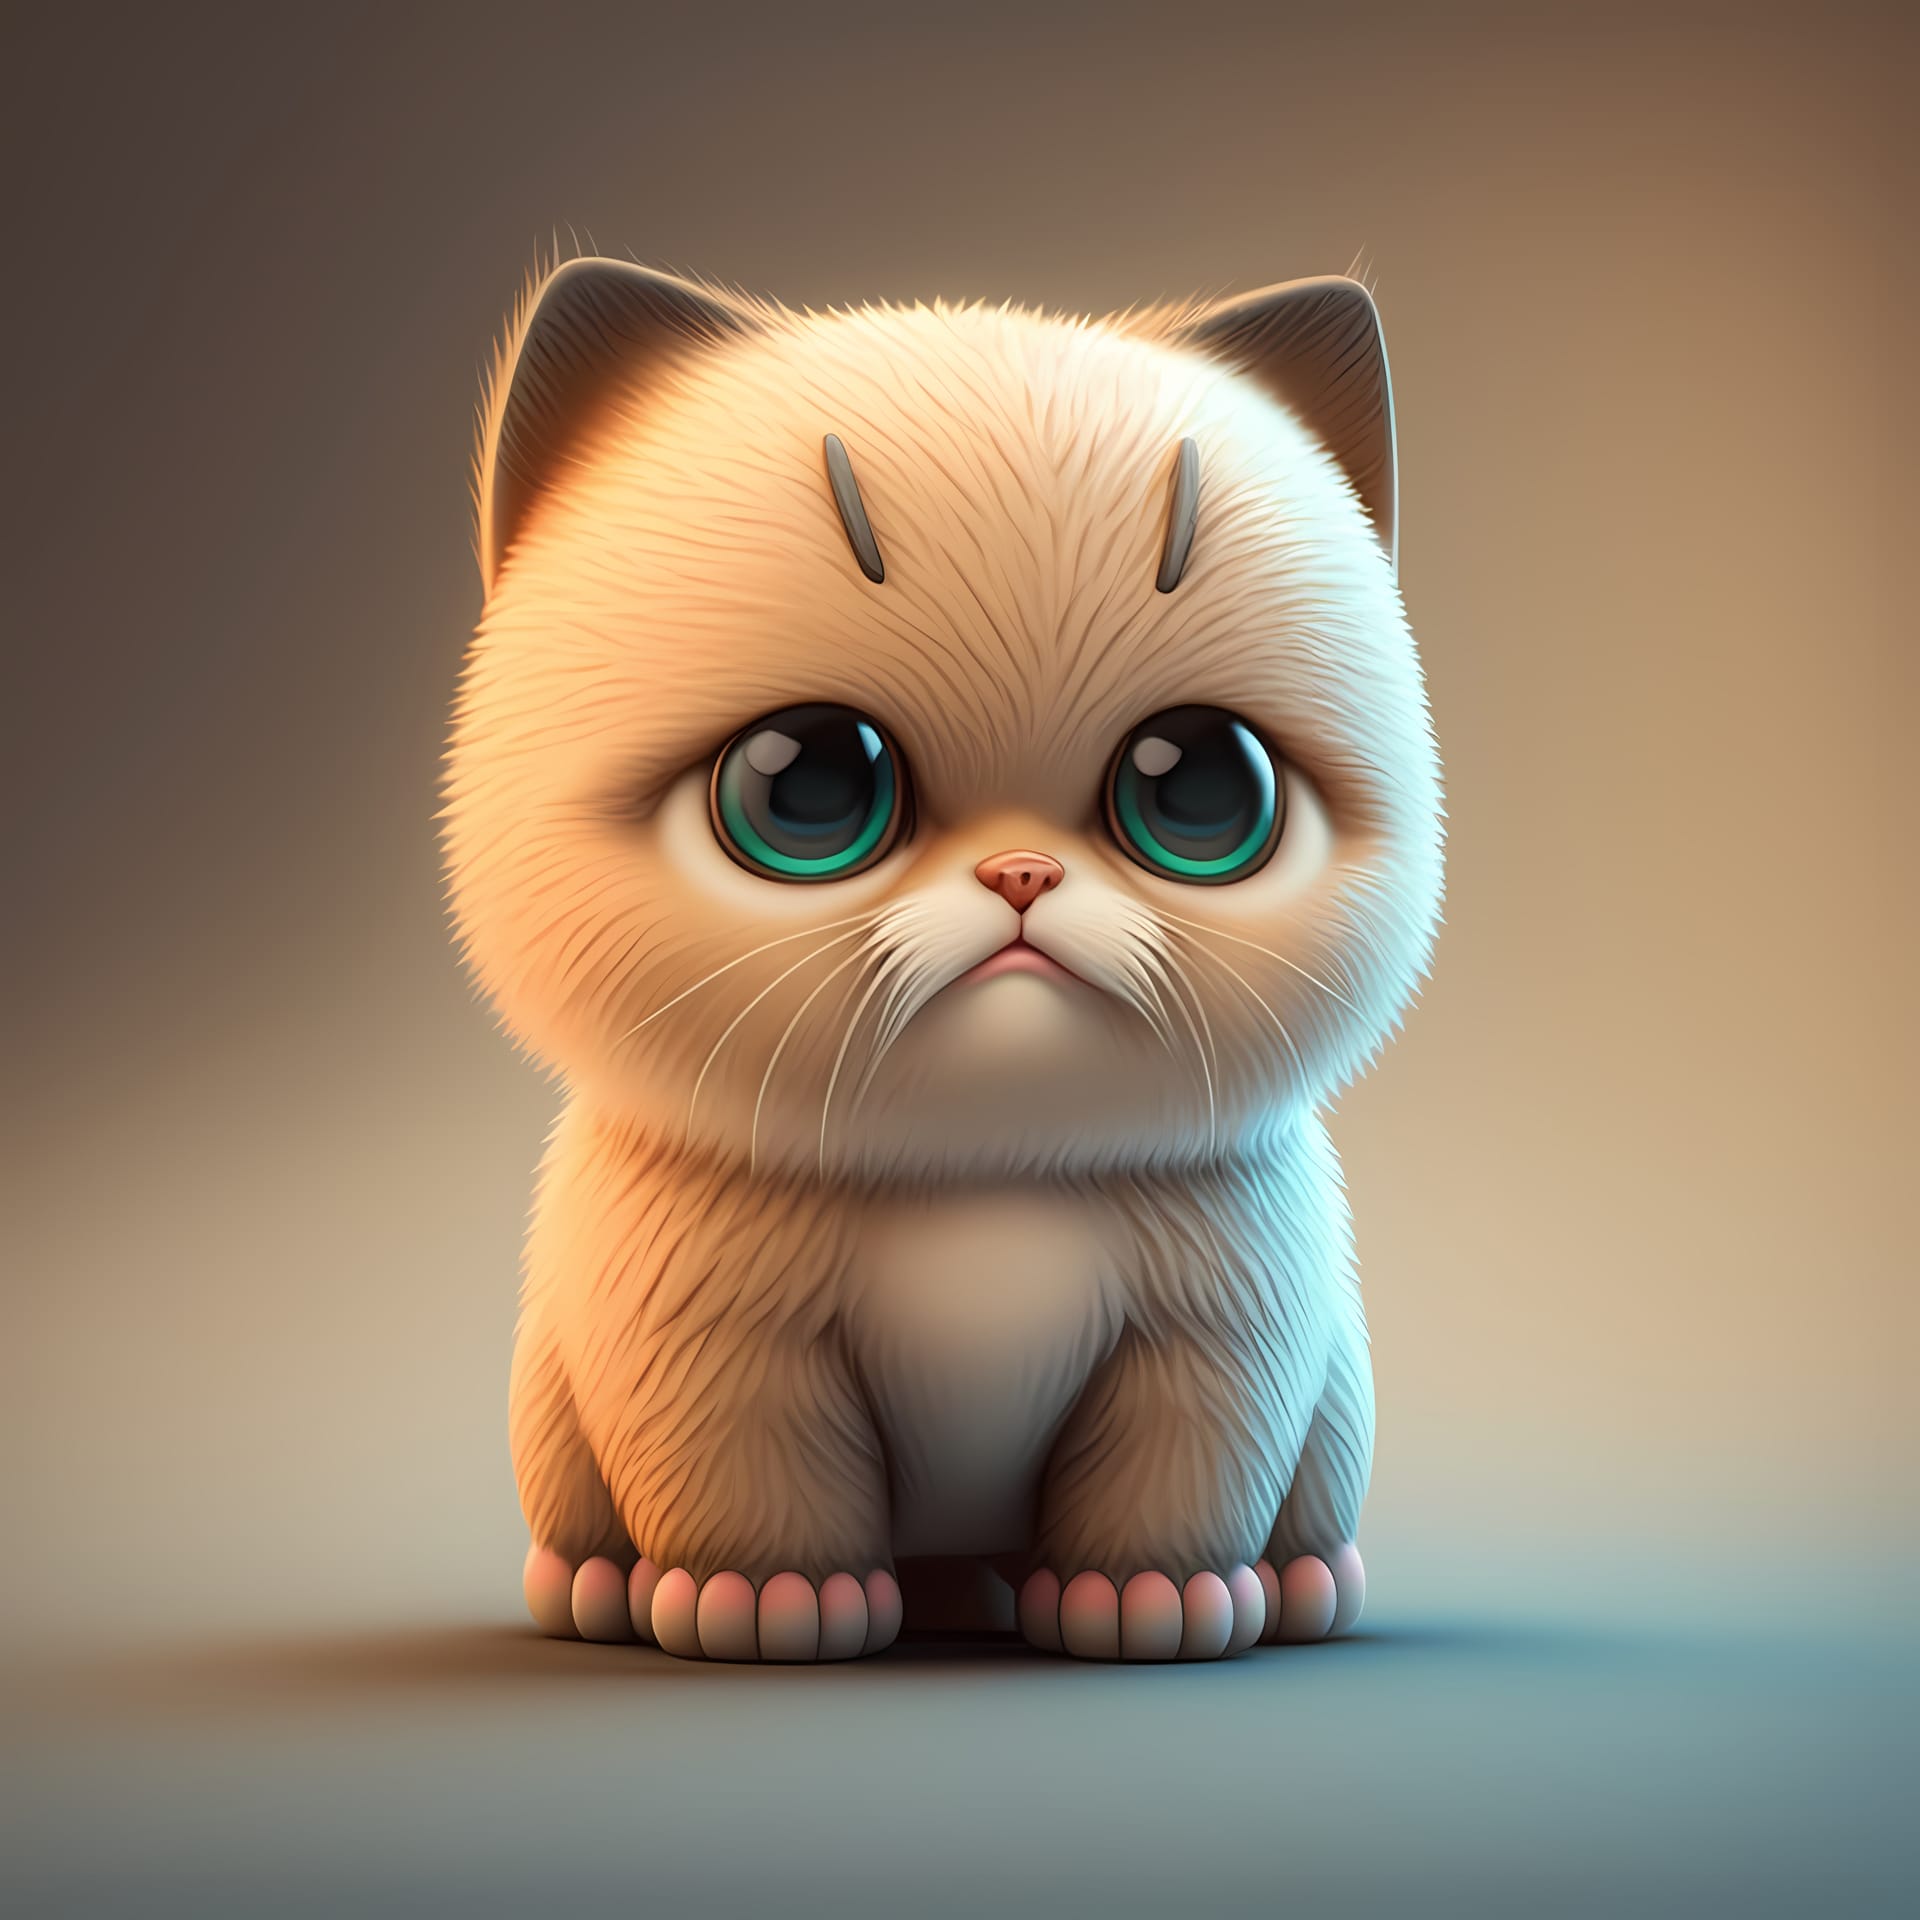 Adorable cute chubby cat 3d render luminous image